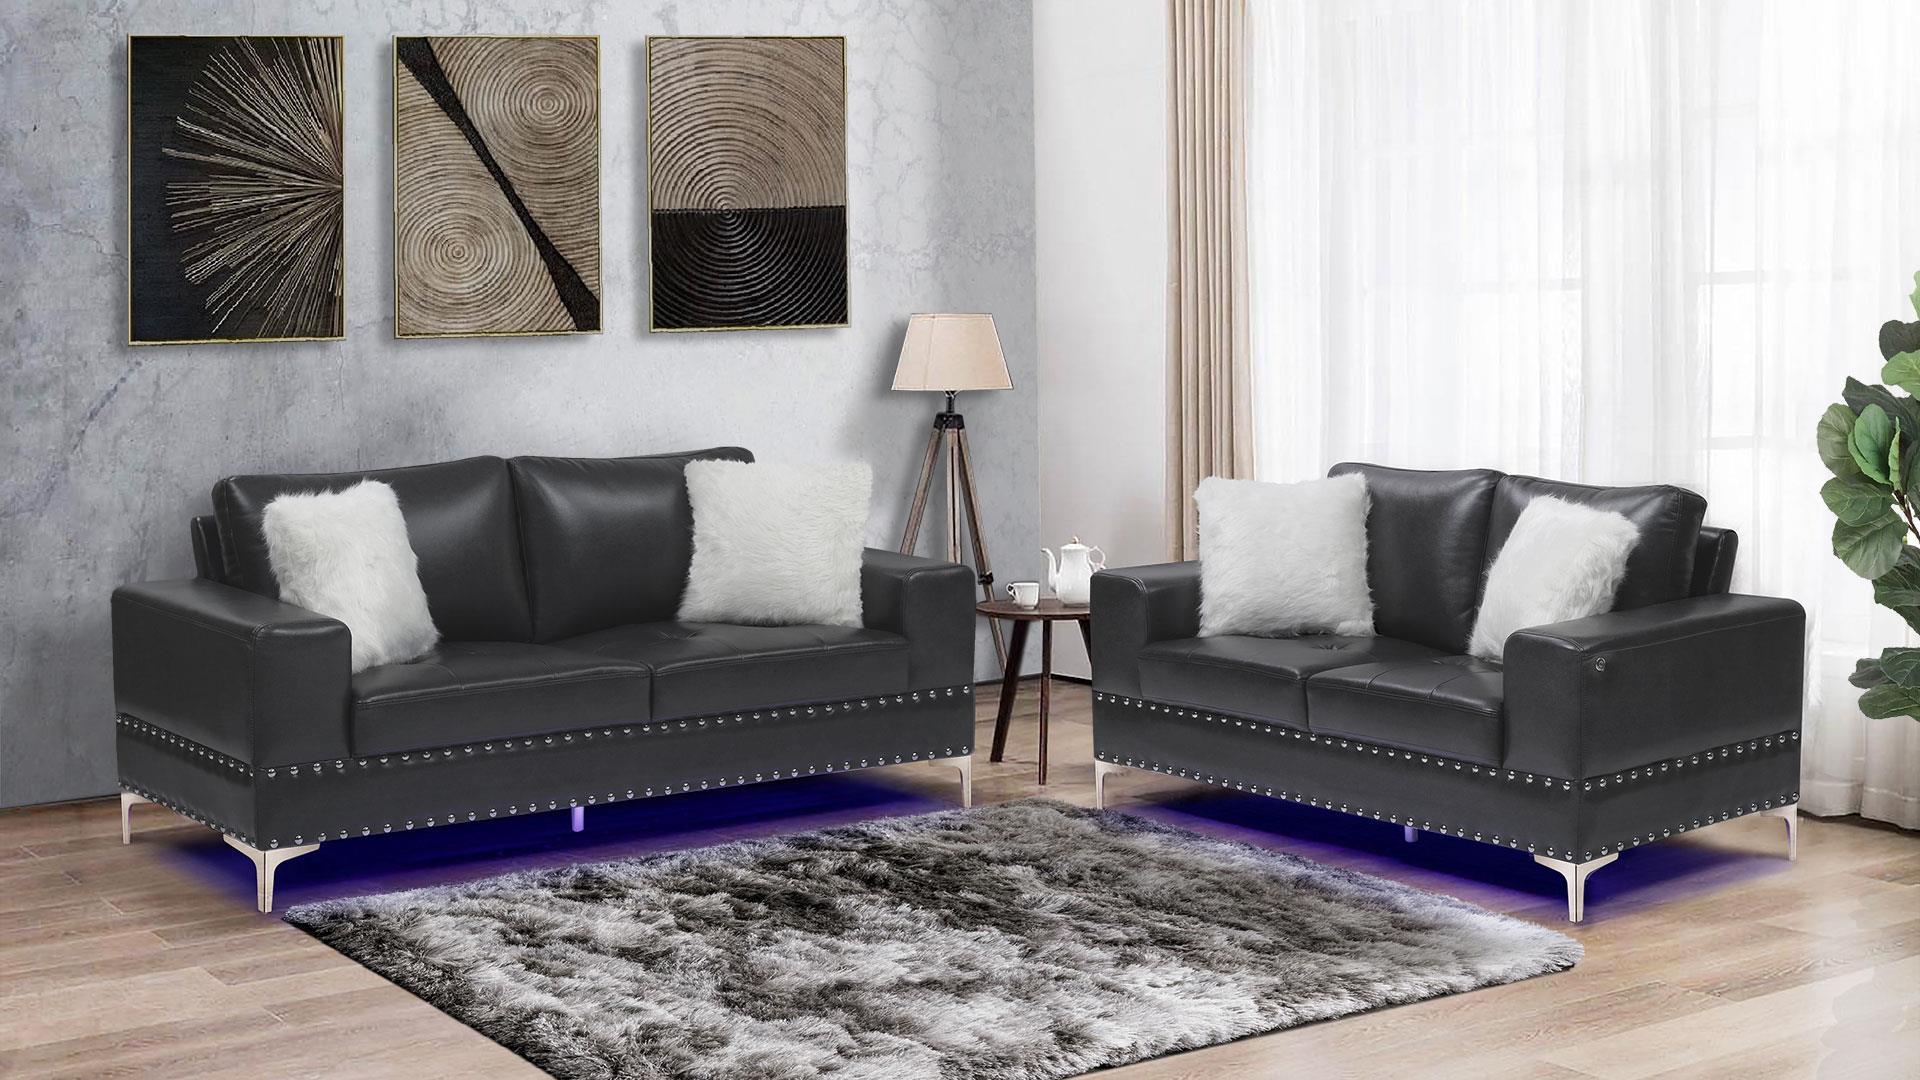 

    
U98 Glam Design Charcoal Leather Gel Sofa Set 2Pcs w/ LED Global USA
